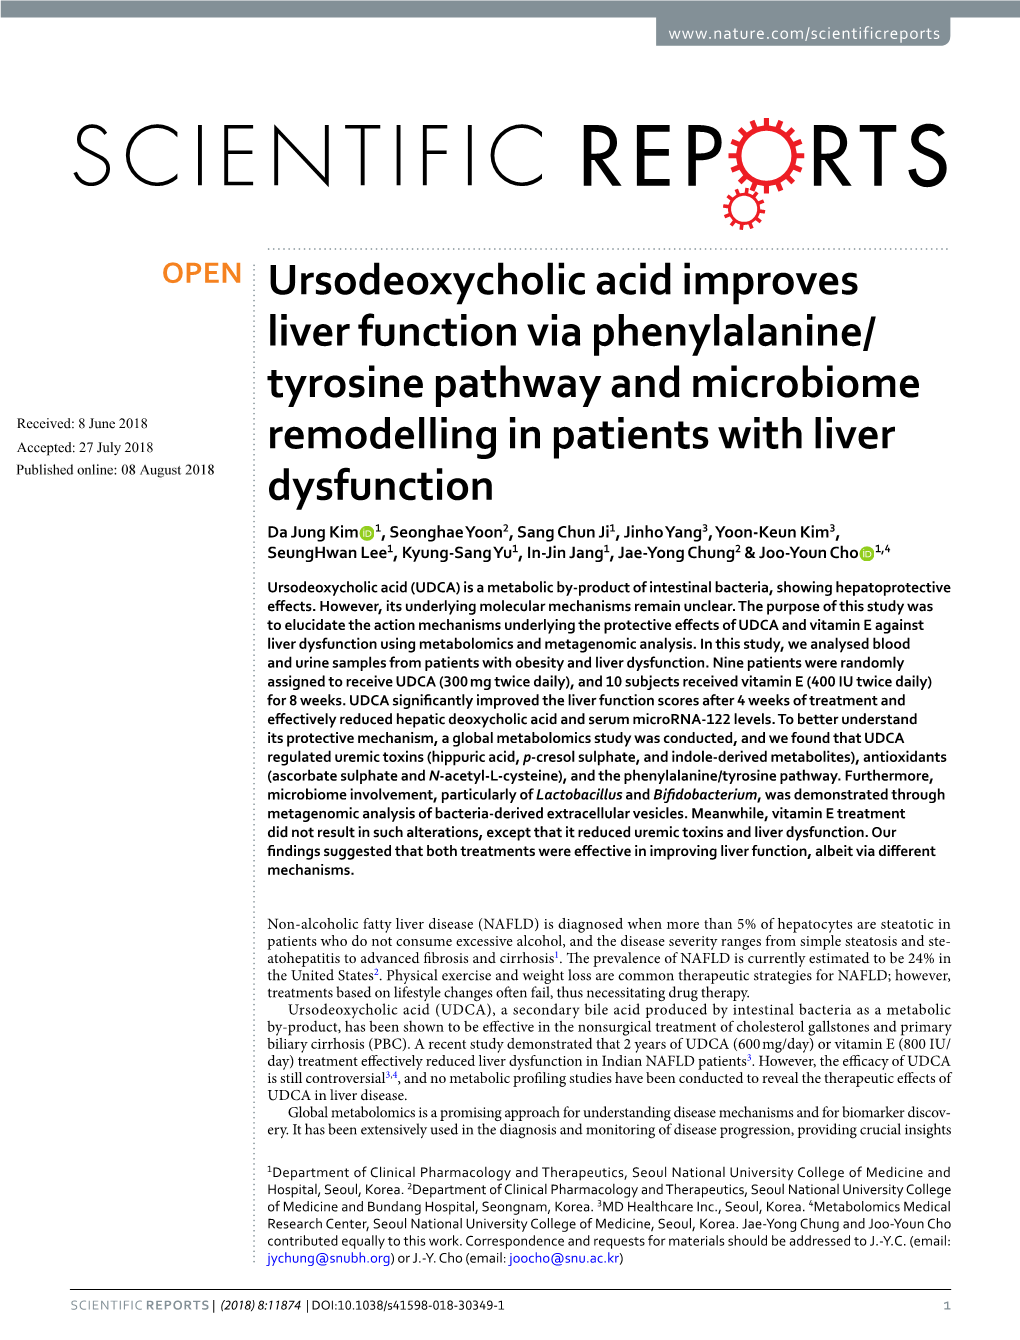 Ursodeoxycholic Acid Improves Liver Function Via Phenylalanine/Tyrosine